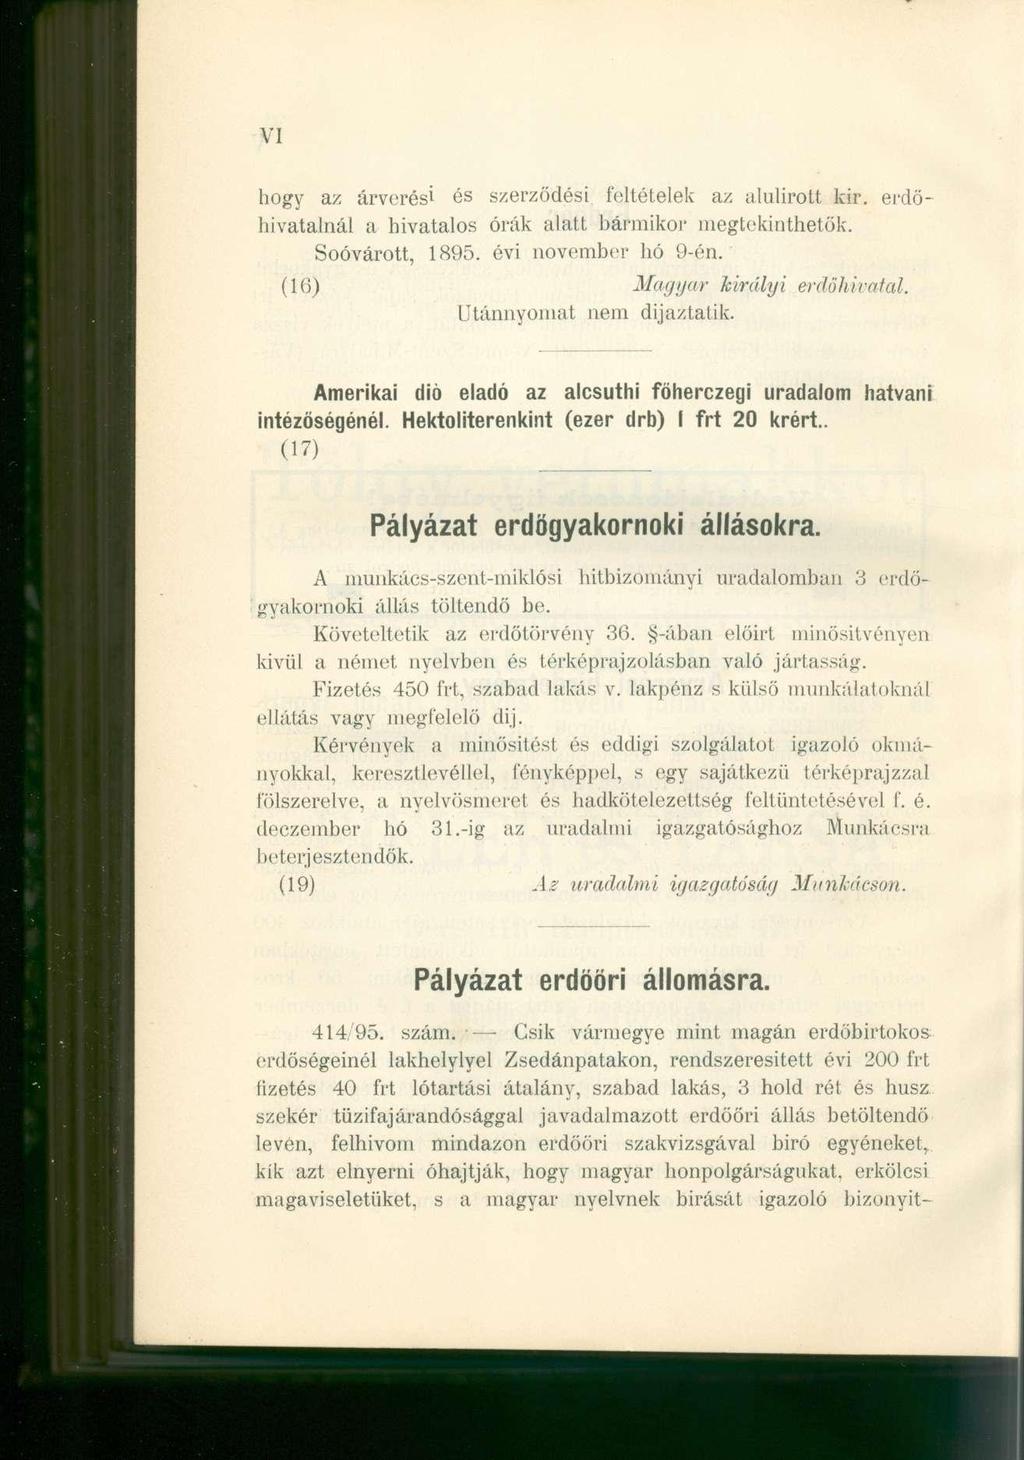 VI hogy az árverési és szerződési feltételek az alulírott kir. erdőhivatalnál a hivatalos órák alatt bármikor megtekinthetők. Soóvárott, 1895. évi november hó 9-én. (16) Magyar királyi erdöhivatal.